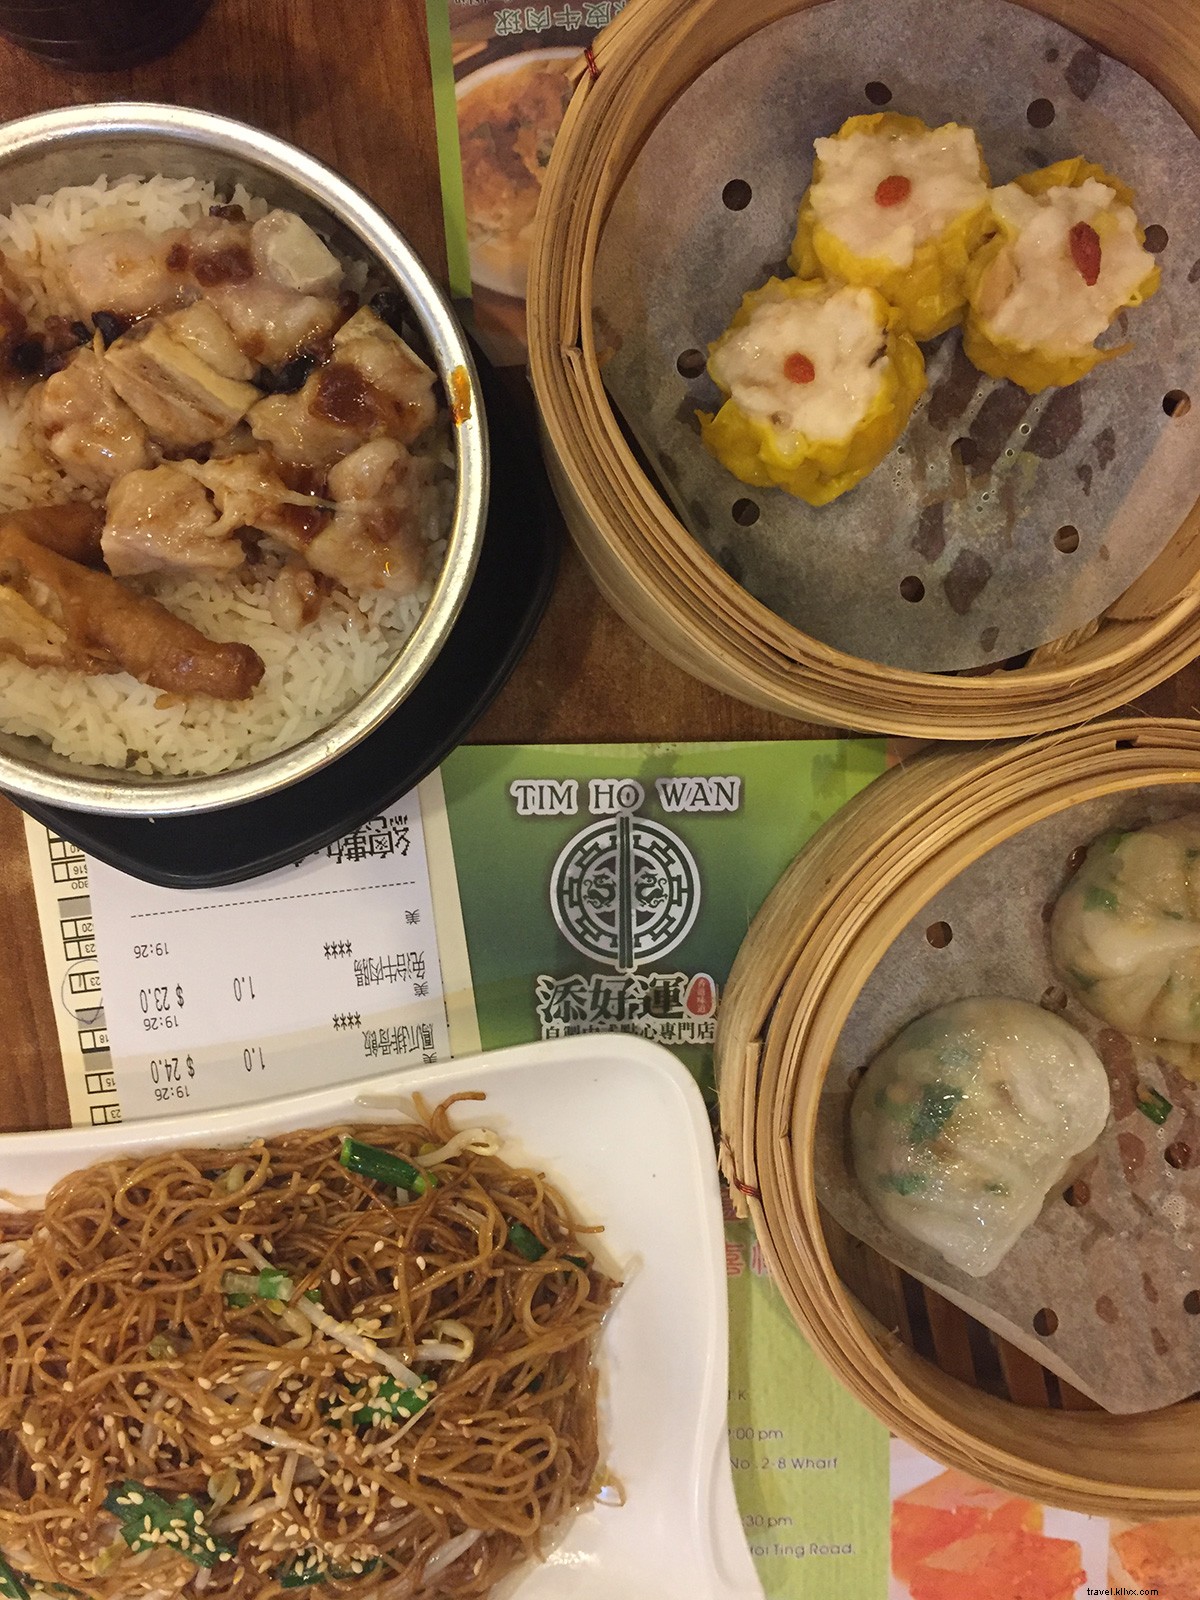 ミシュランスター餃子と広東料理の高級レストランの場合、 香港の九龍地区に向かう